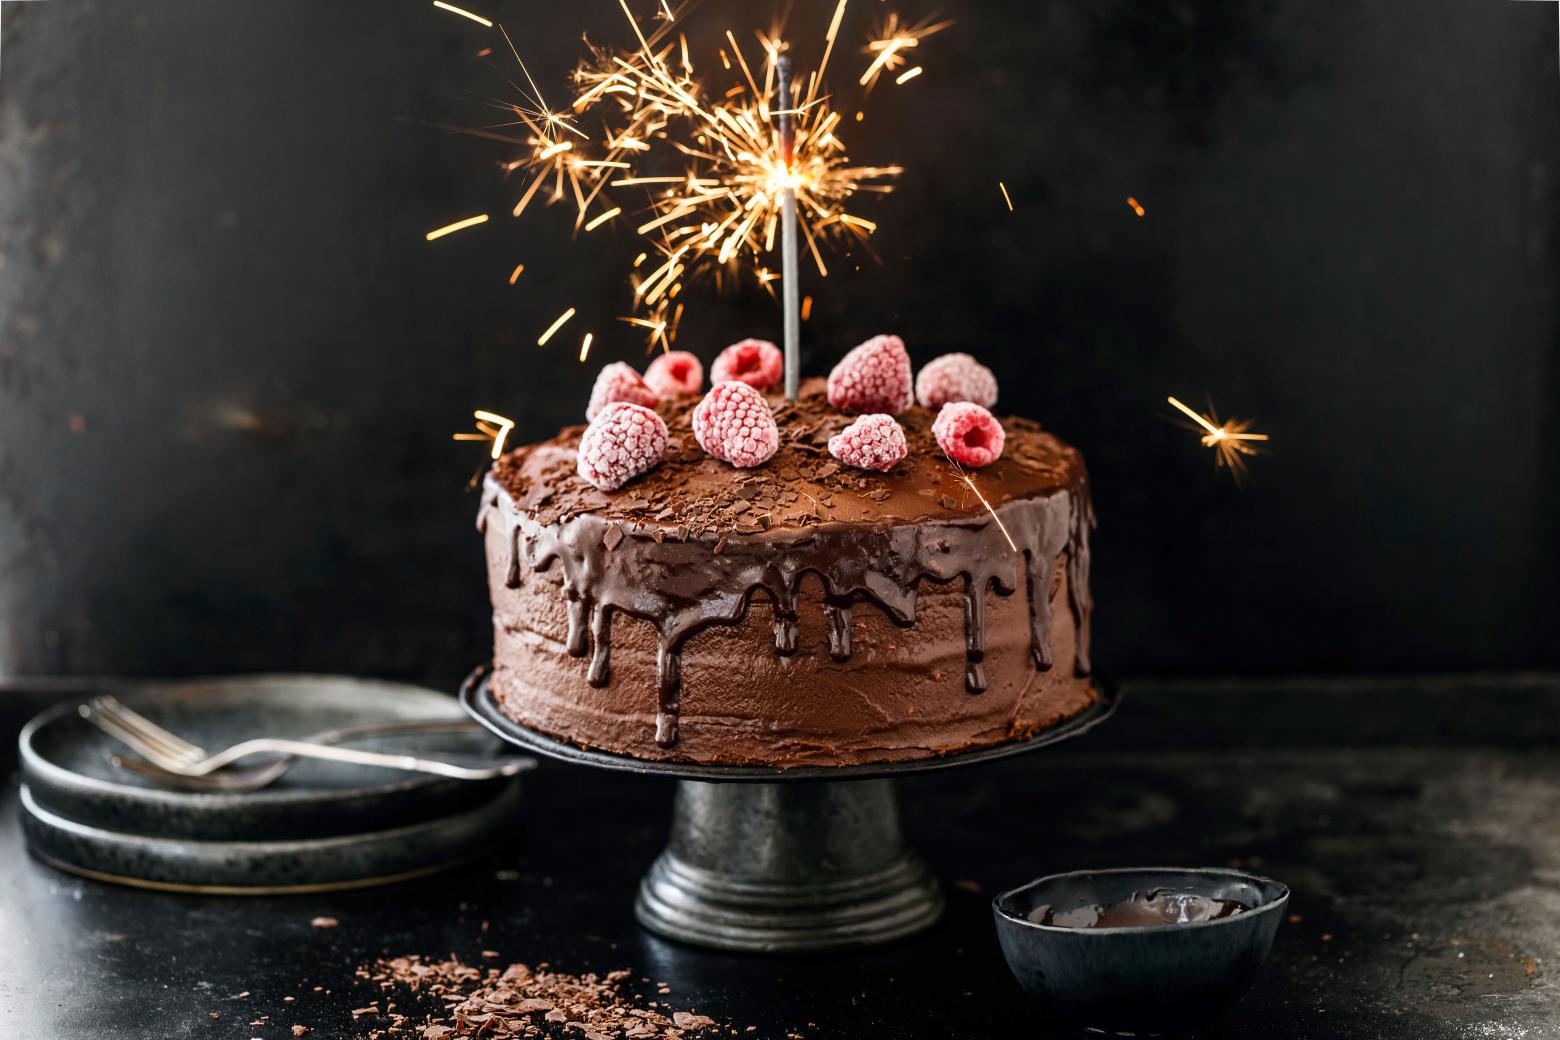 Comment décorer gâteau d'anniversaire avec des bougies – Sparklers